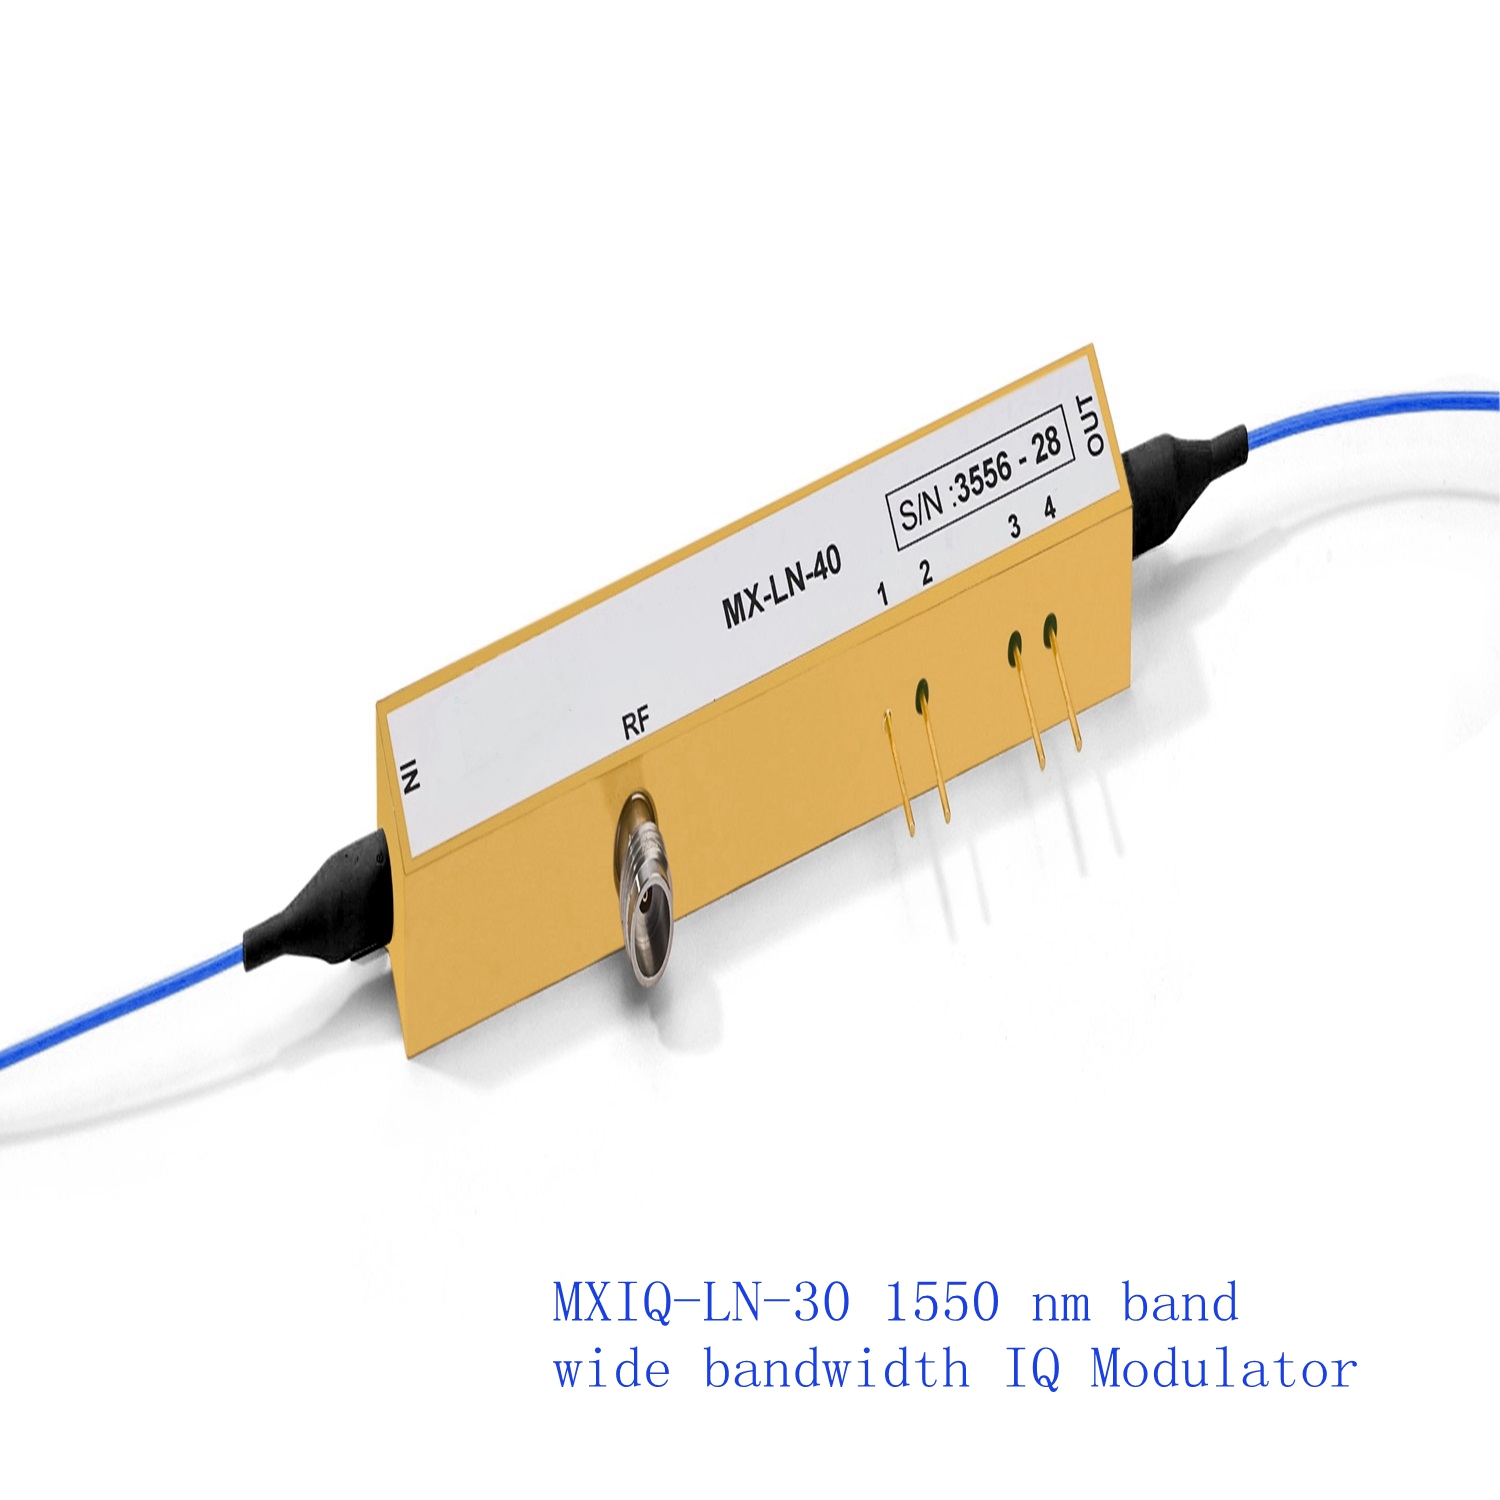 1550 nm band wide bandwidth IQ Modulator